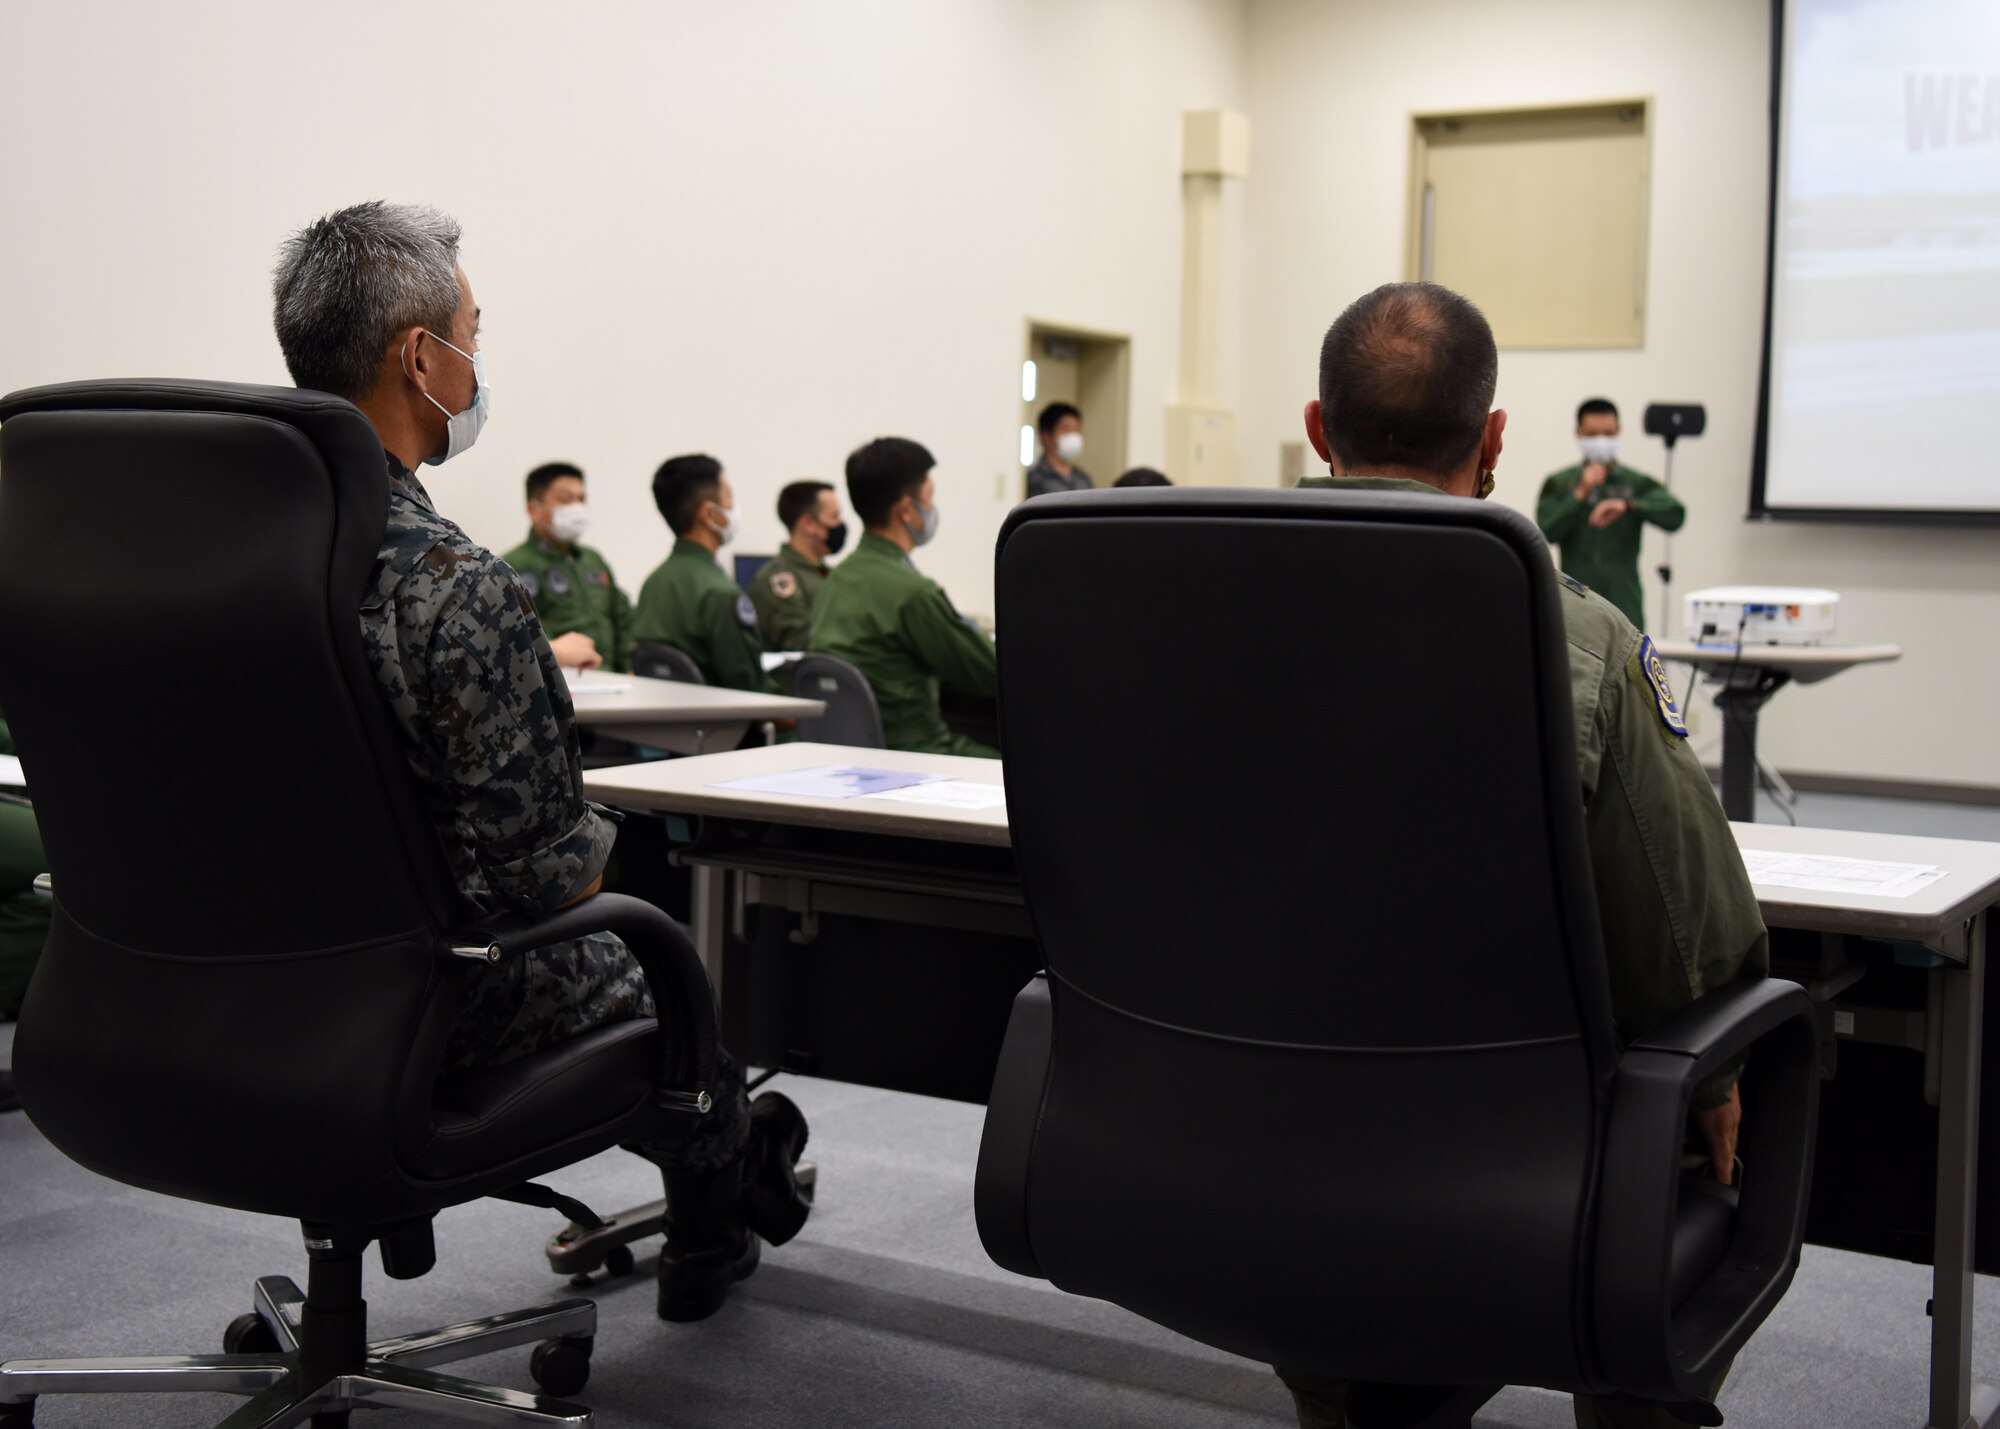 Individuals receive an indoor briefing